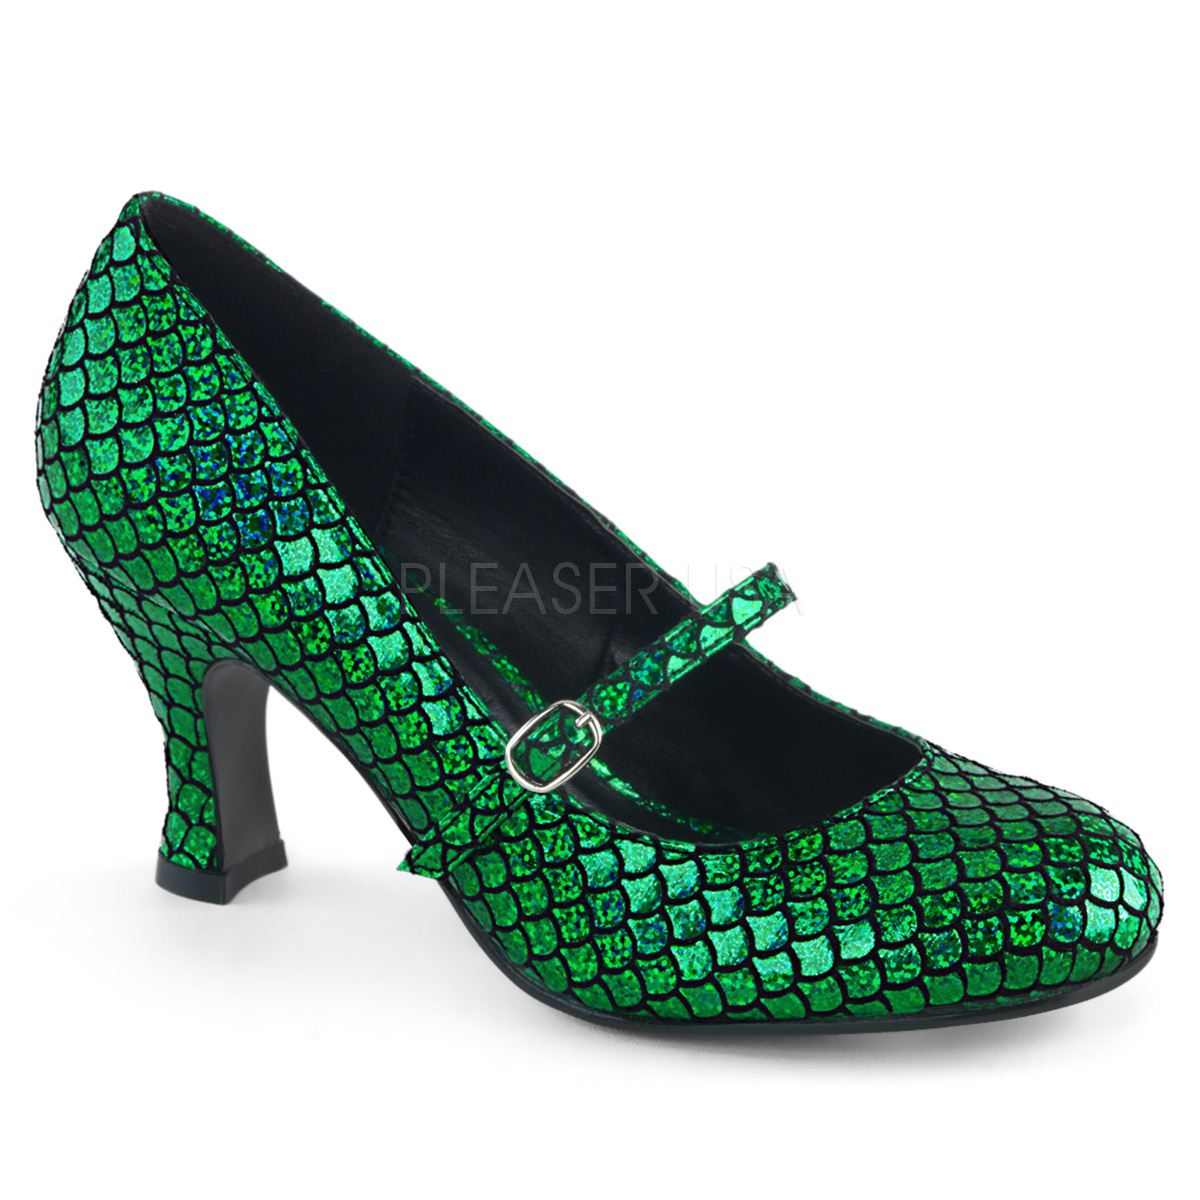 Uitgelezene Groen 7,5 cm MERMAID-70 pumps schoenen met lage hakken JO-89